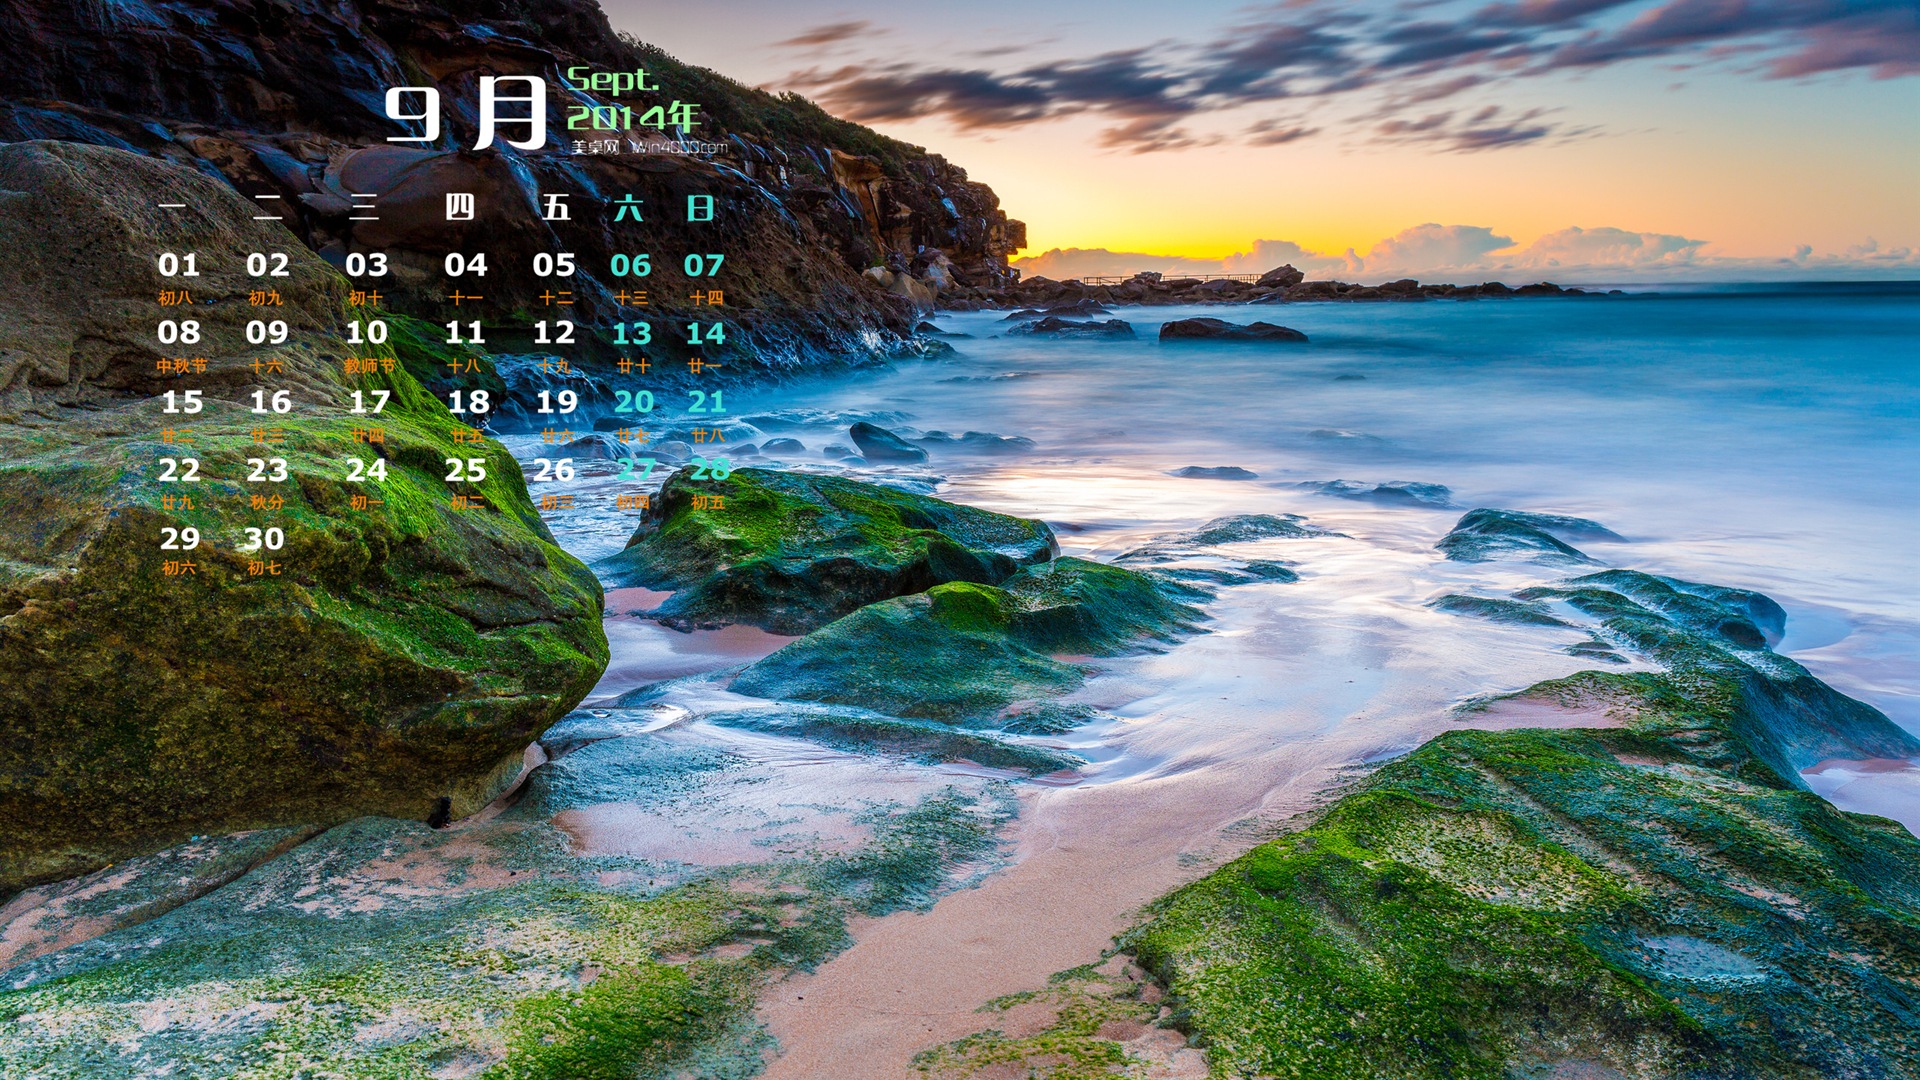 09 2014 wallpaper Calendario (1) #1 - 1920x1080